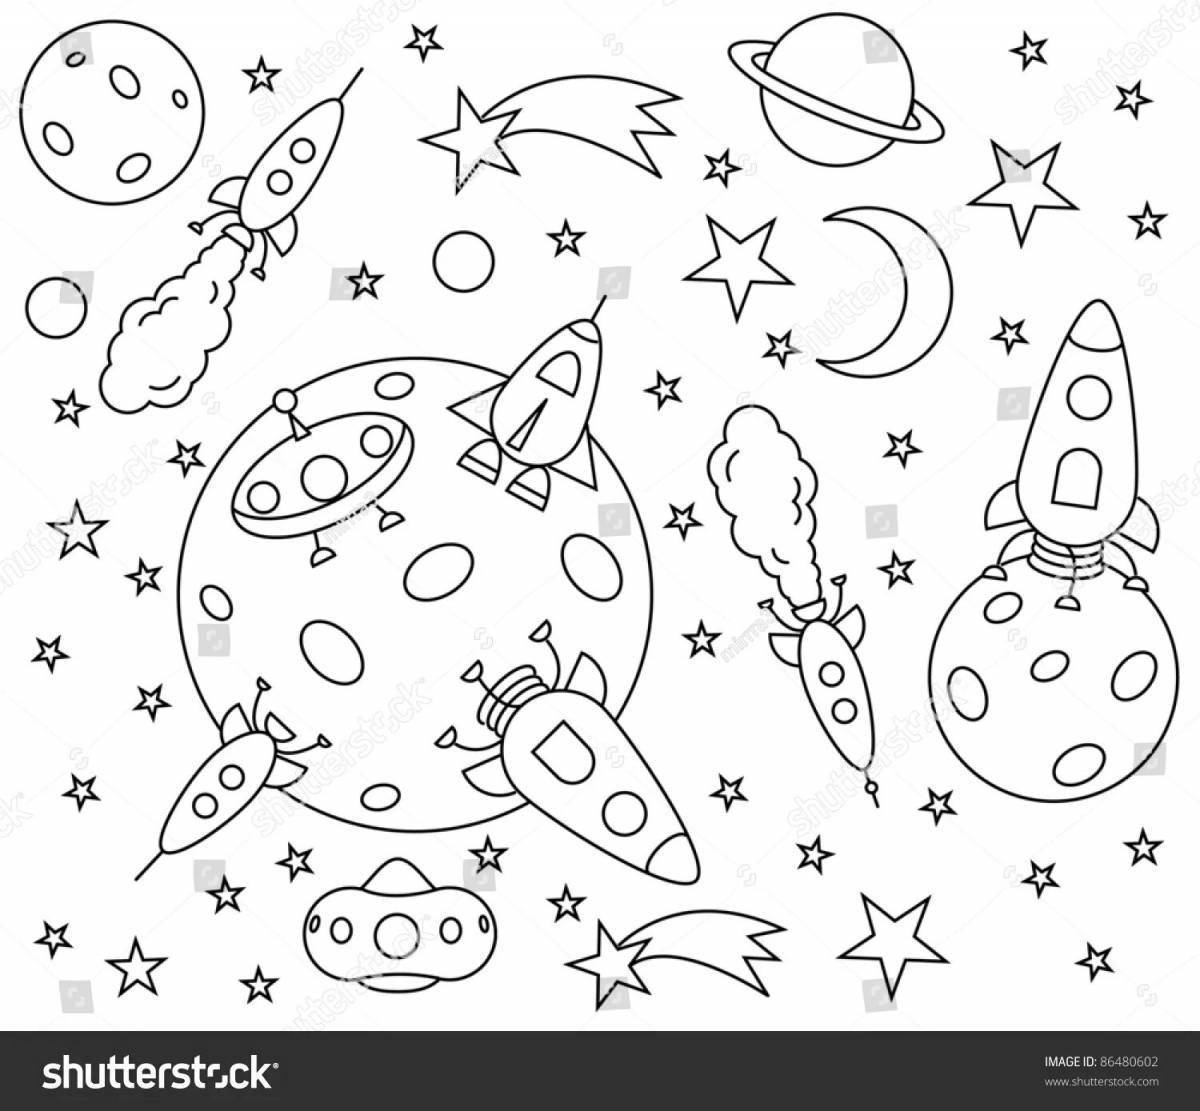 День космонавтики задания для детей